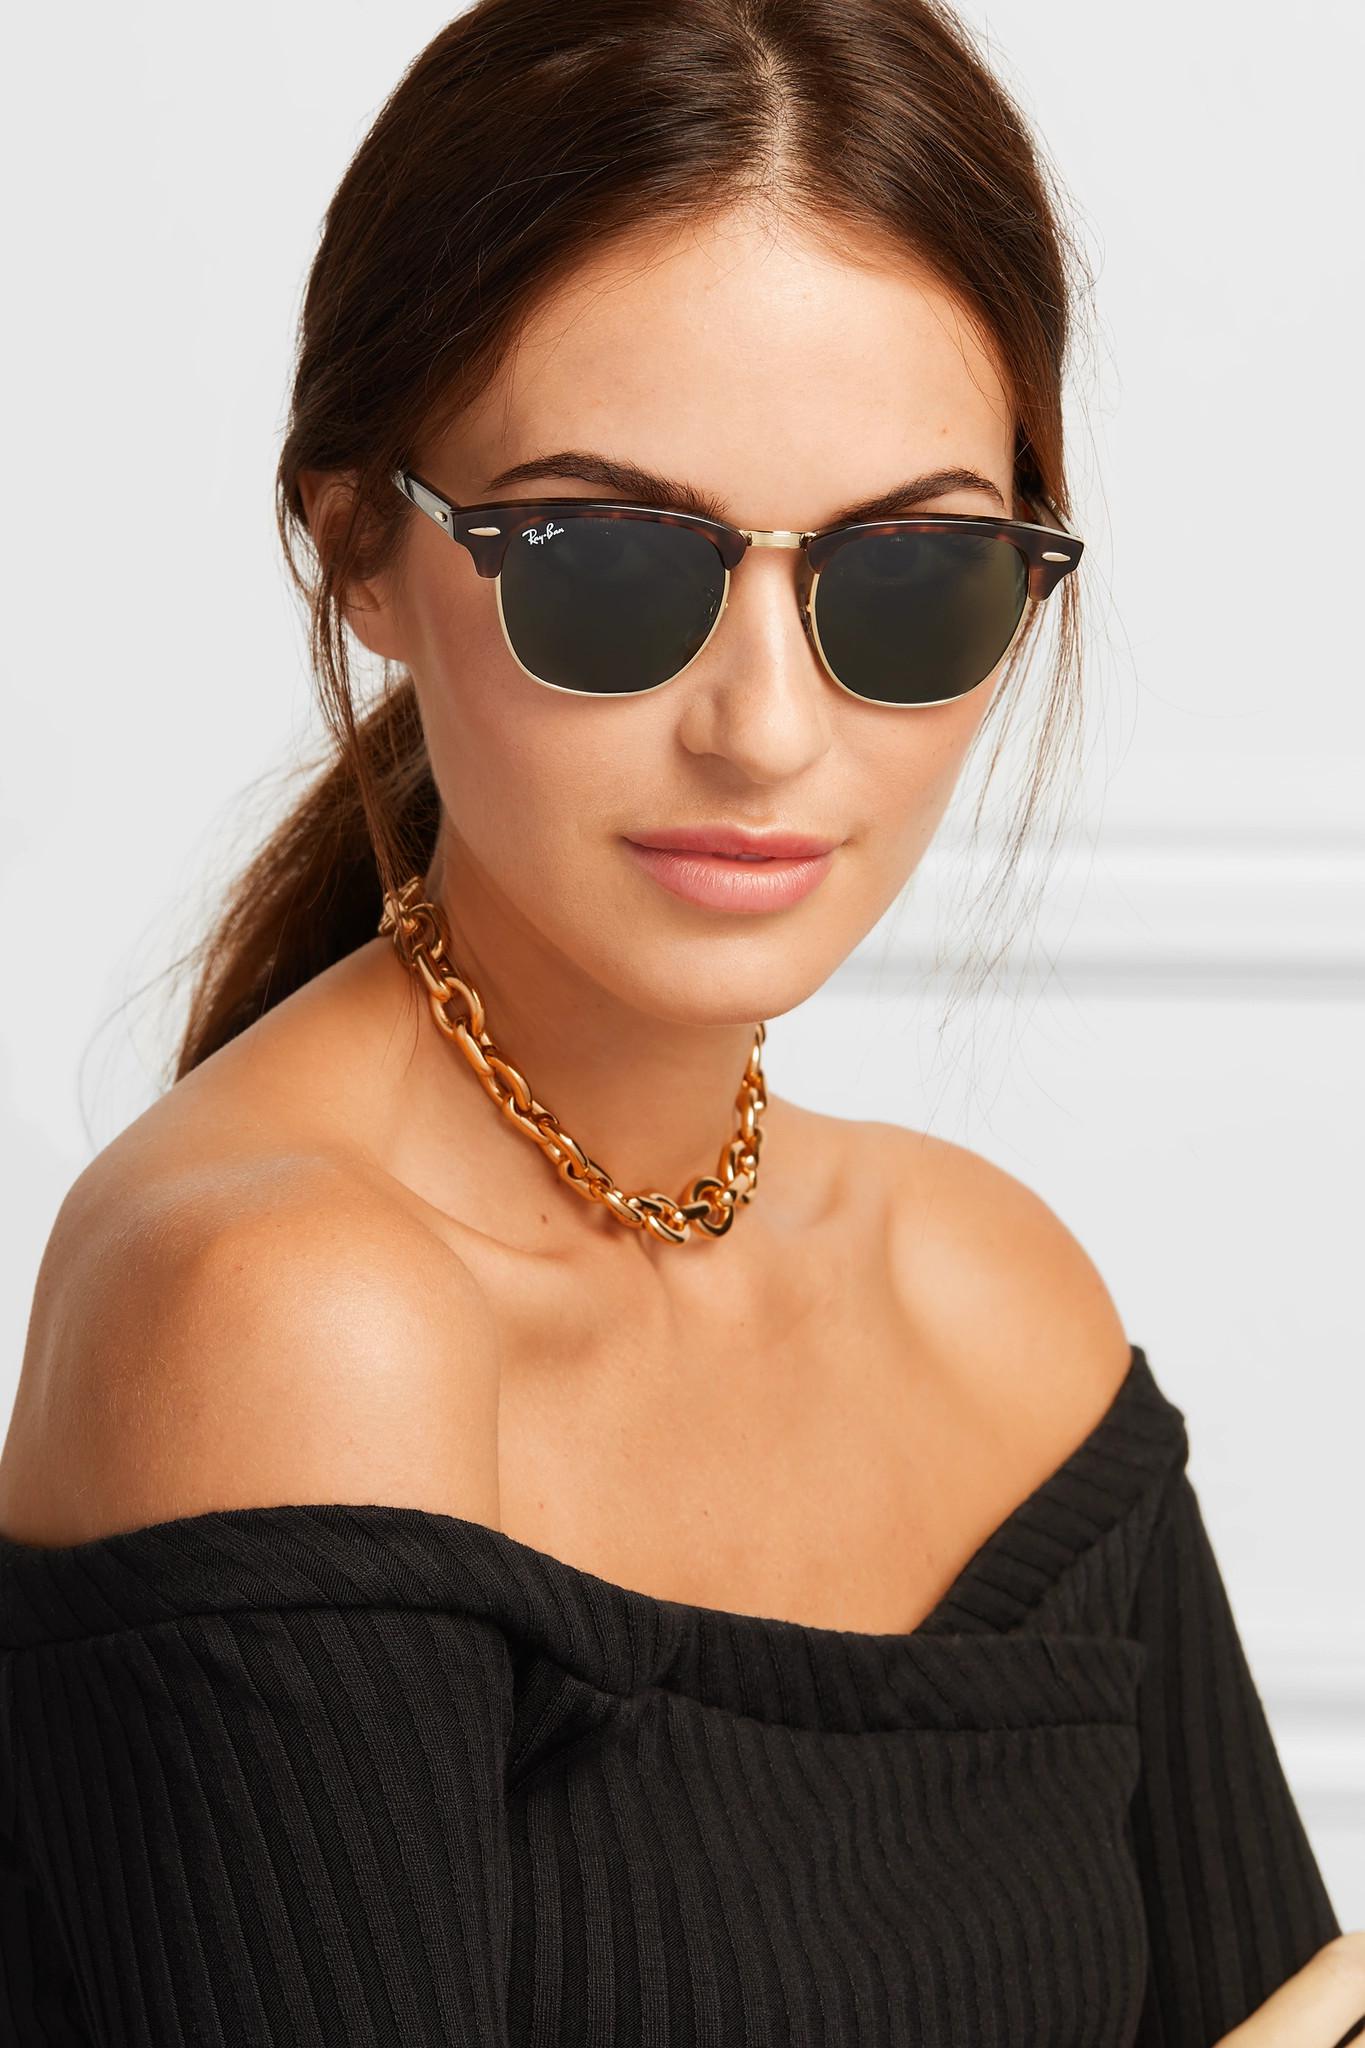 ray ban girl sunglasses